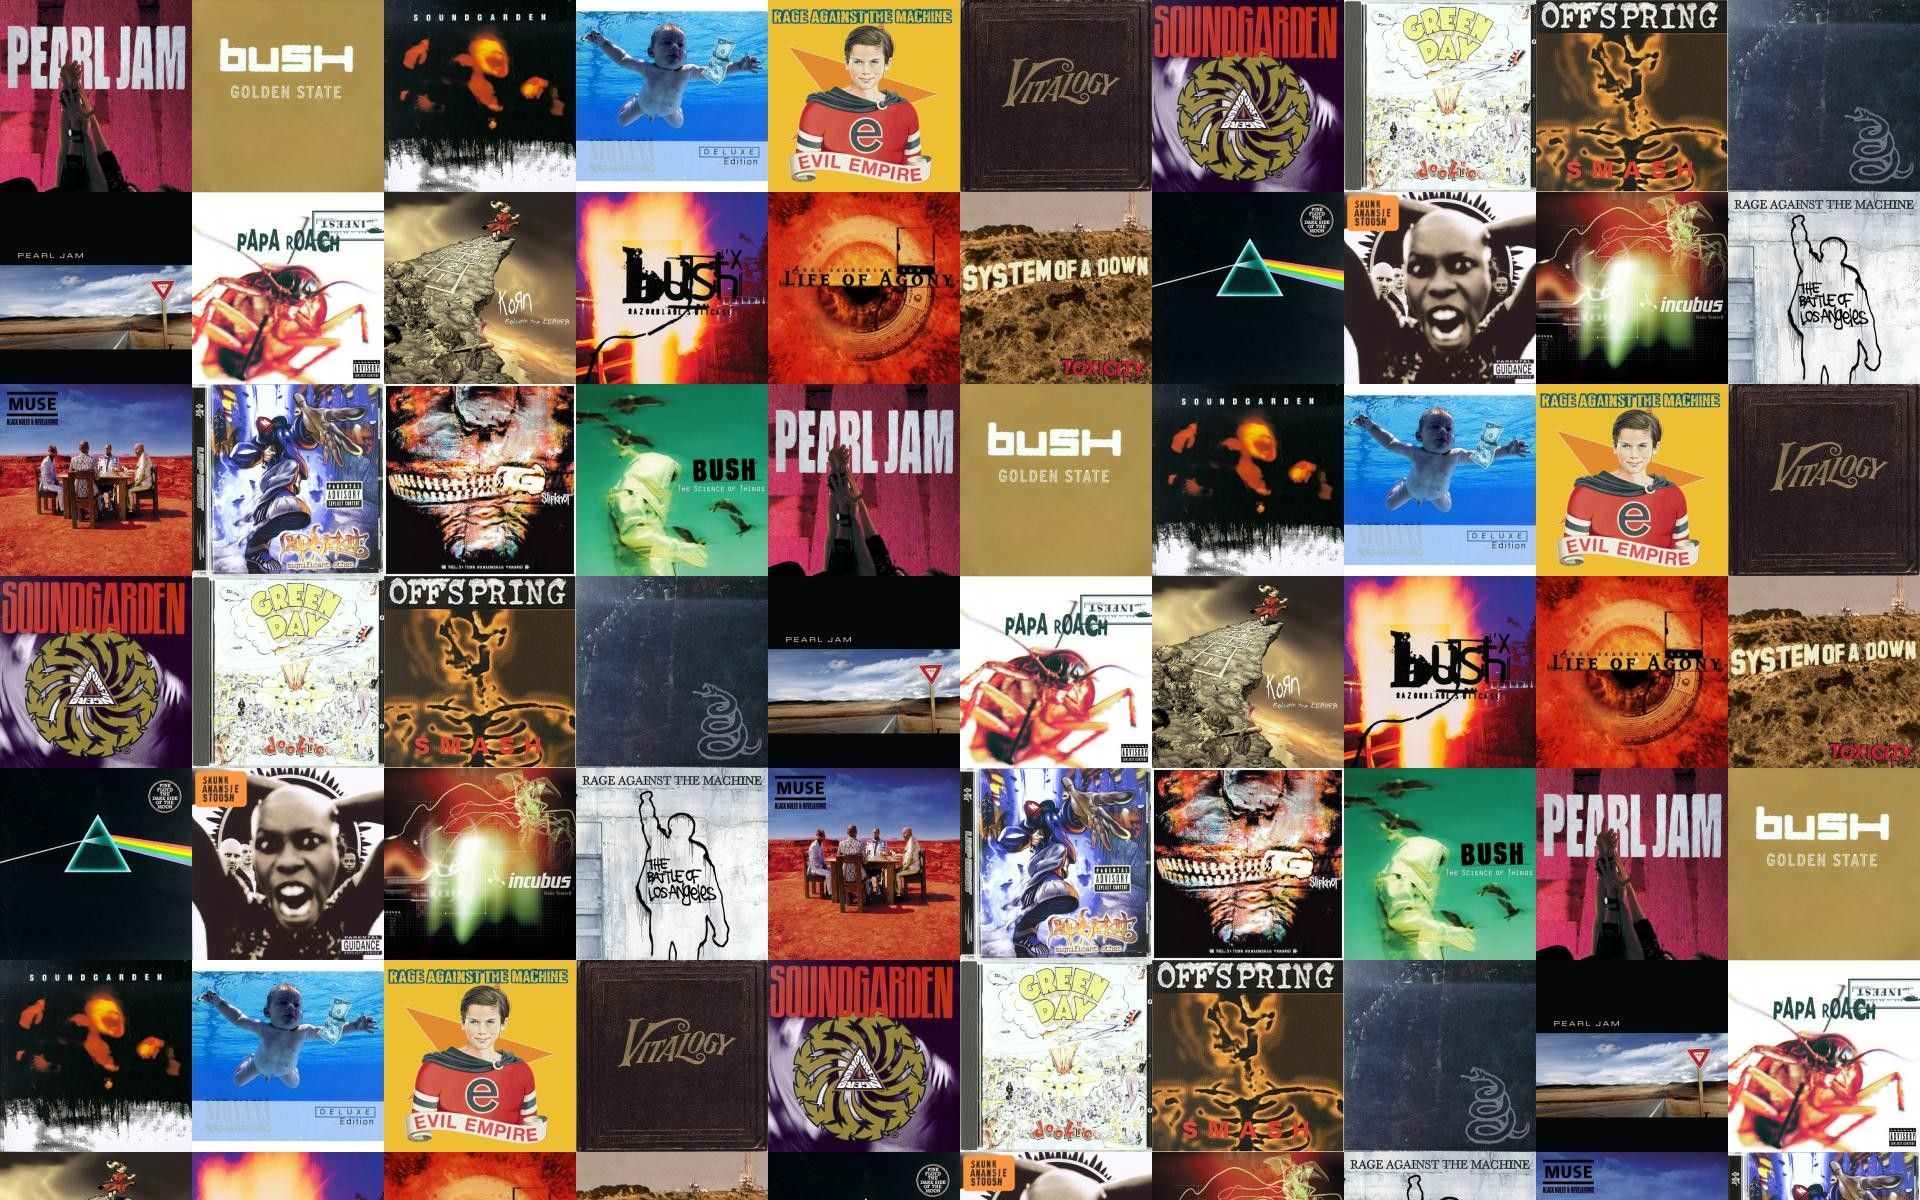 Soundgarden Album Covers Wallpapers